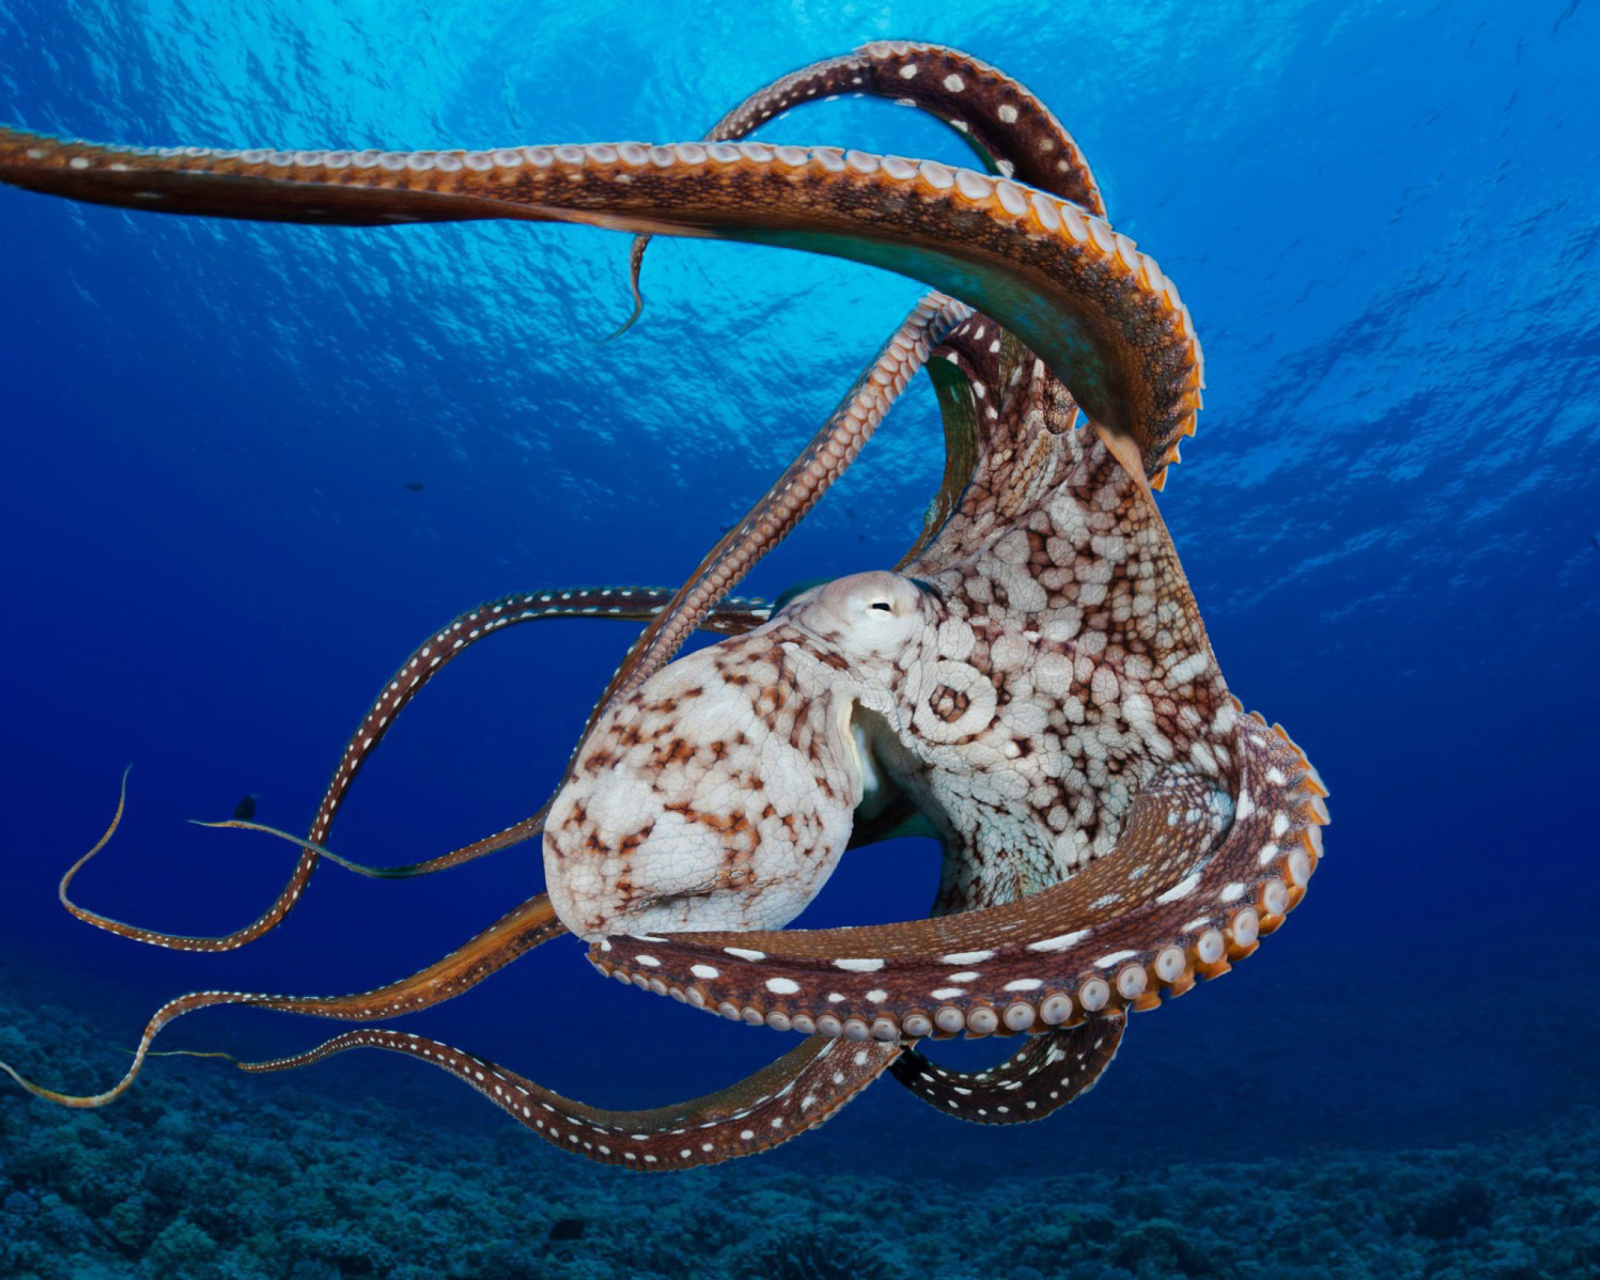 Octopus in the Atlantic Ocean wallpaper 1600x1280